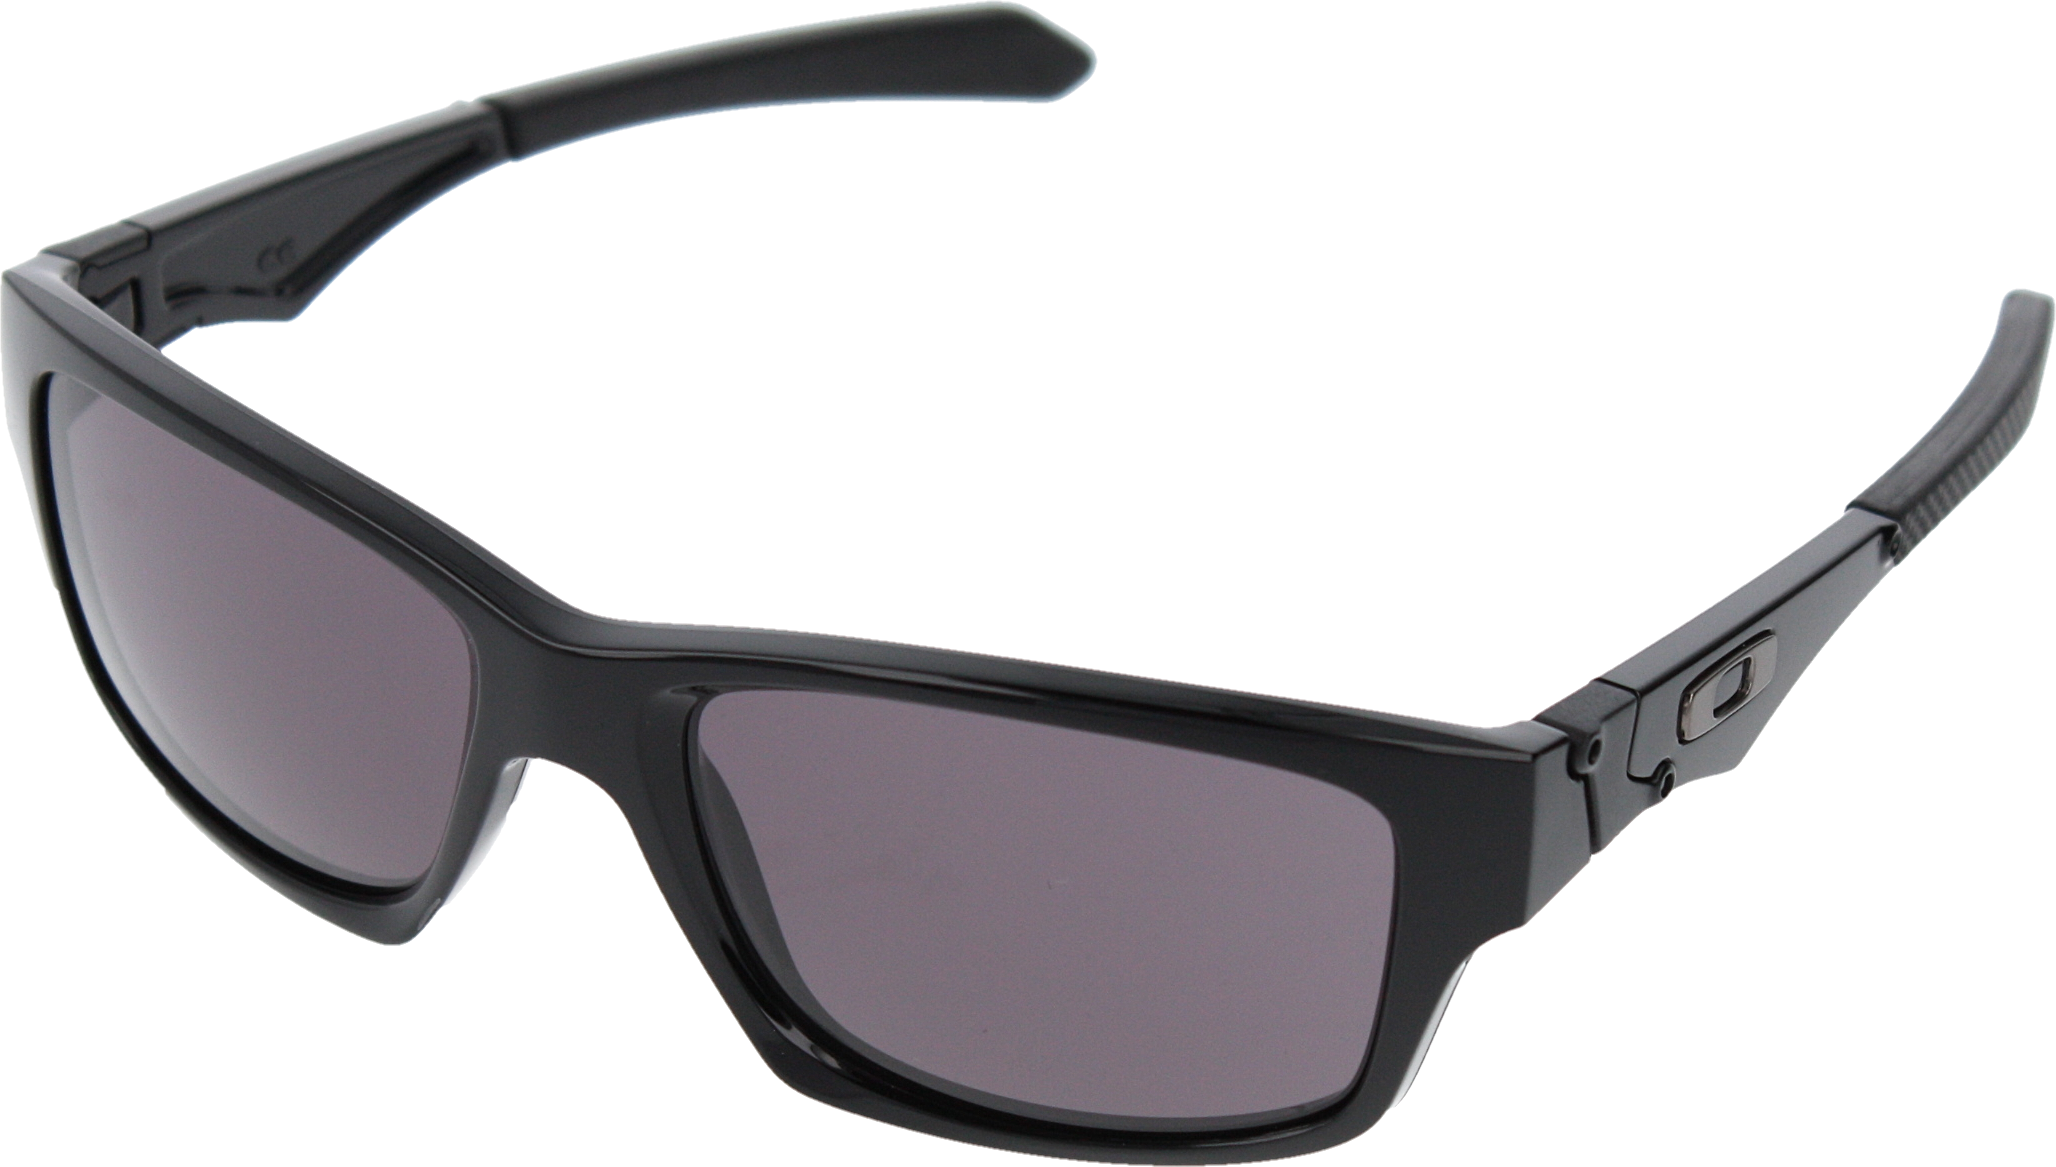 Occhiale Da Sole Oakley Oo9135 913501 Colore Nero Da - Ua Igniter 2.0 Storm Polarized Sunglasses Clipart (2056x1167), Png Download